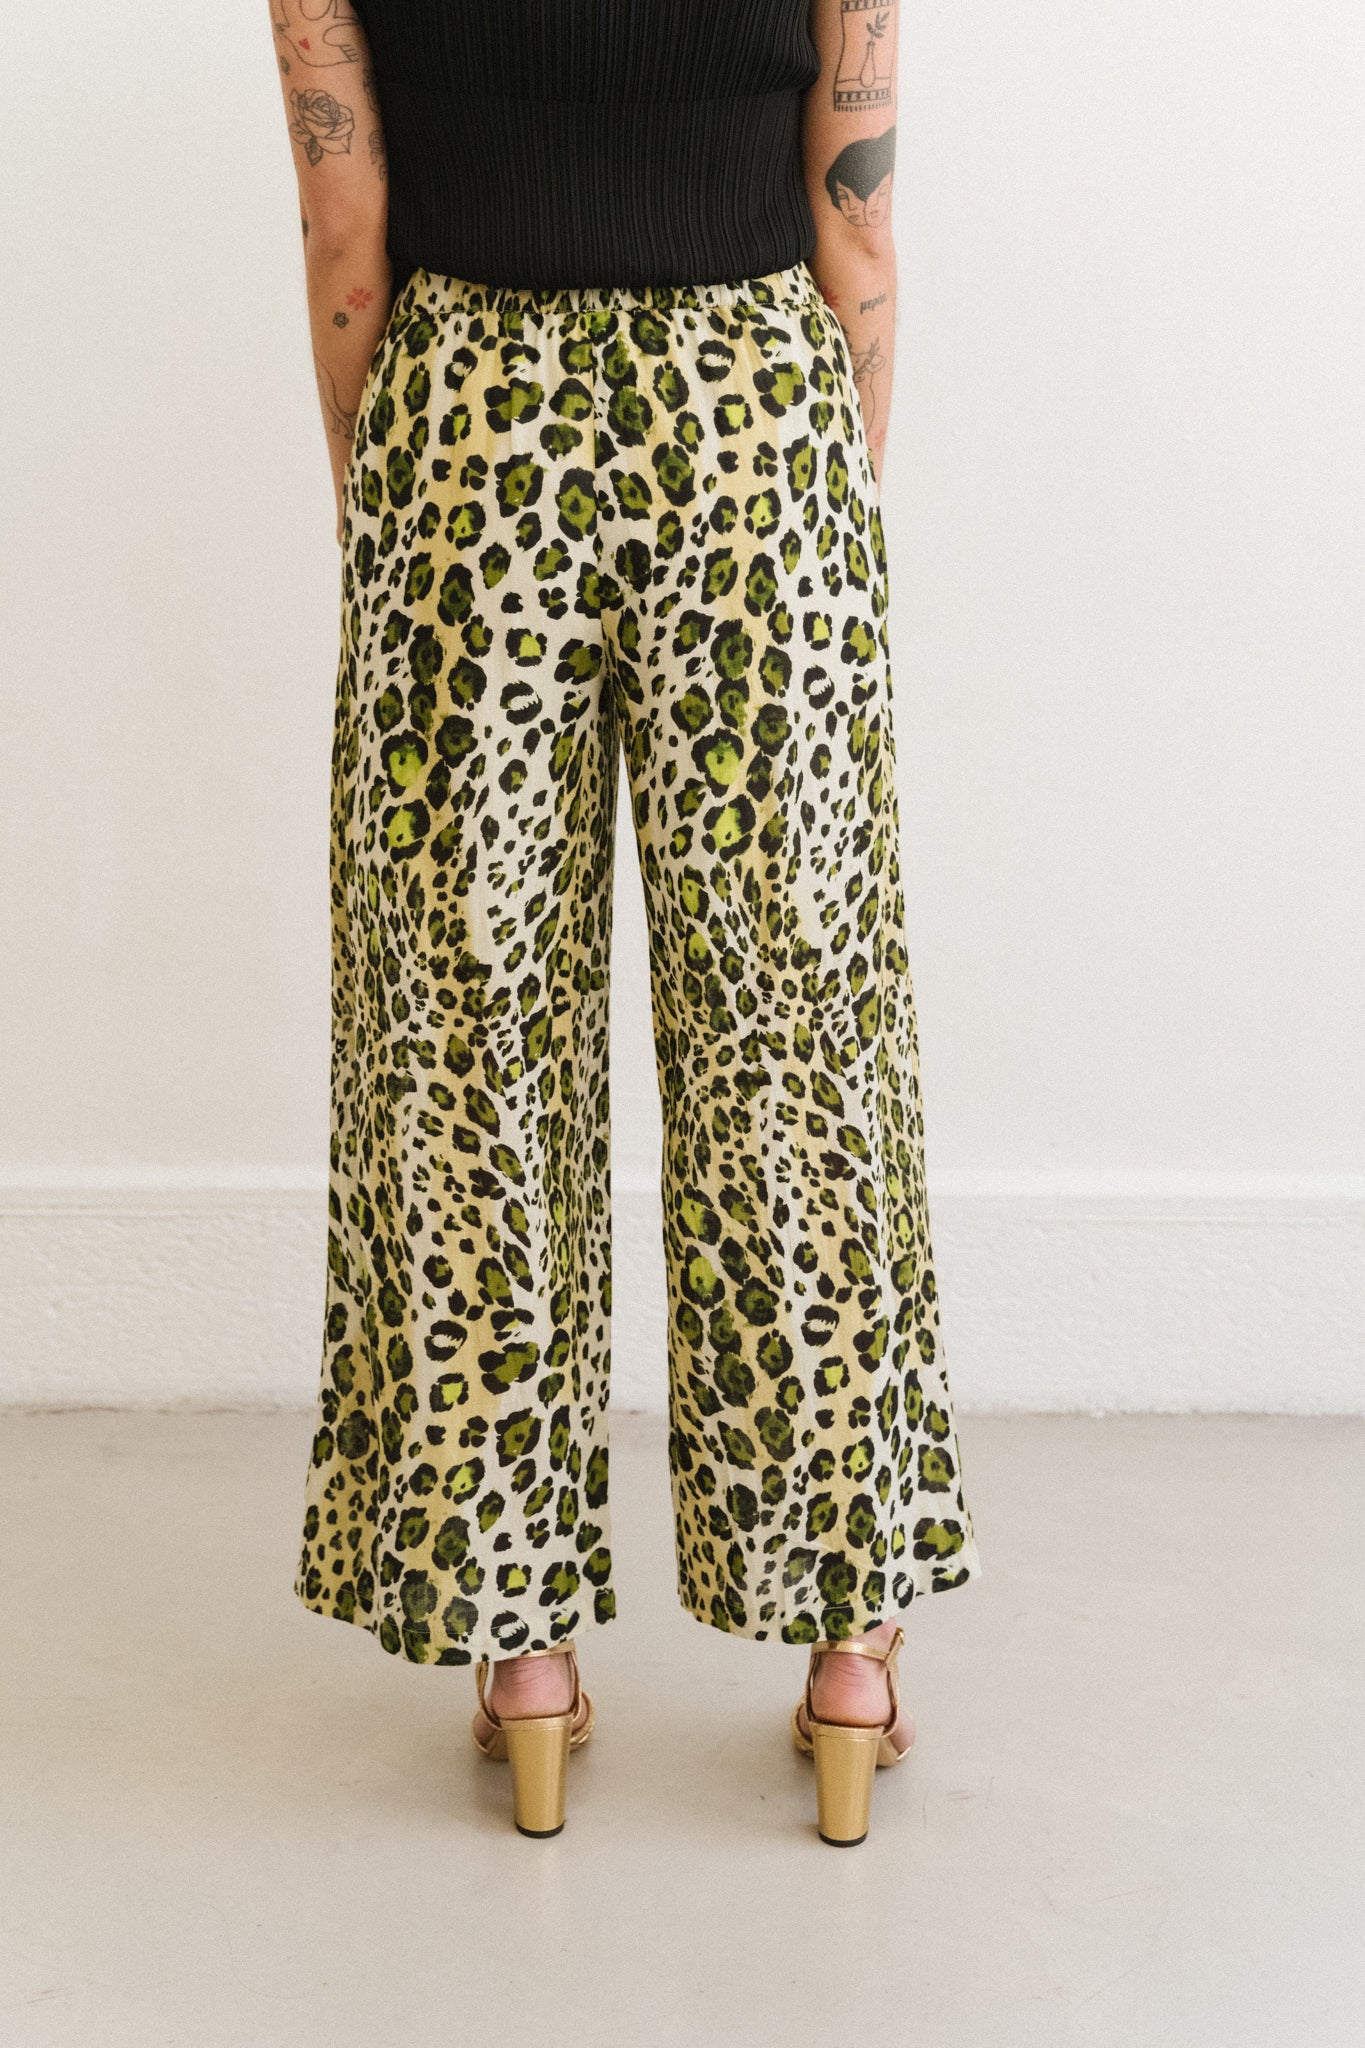 Pantalon Belem Leopard